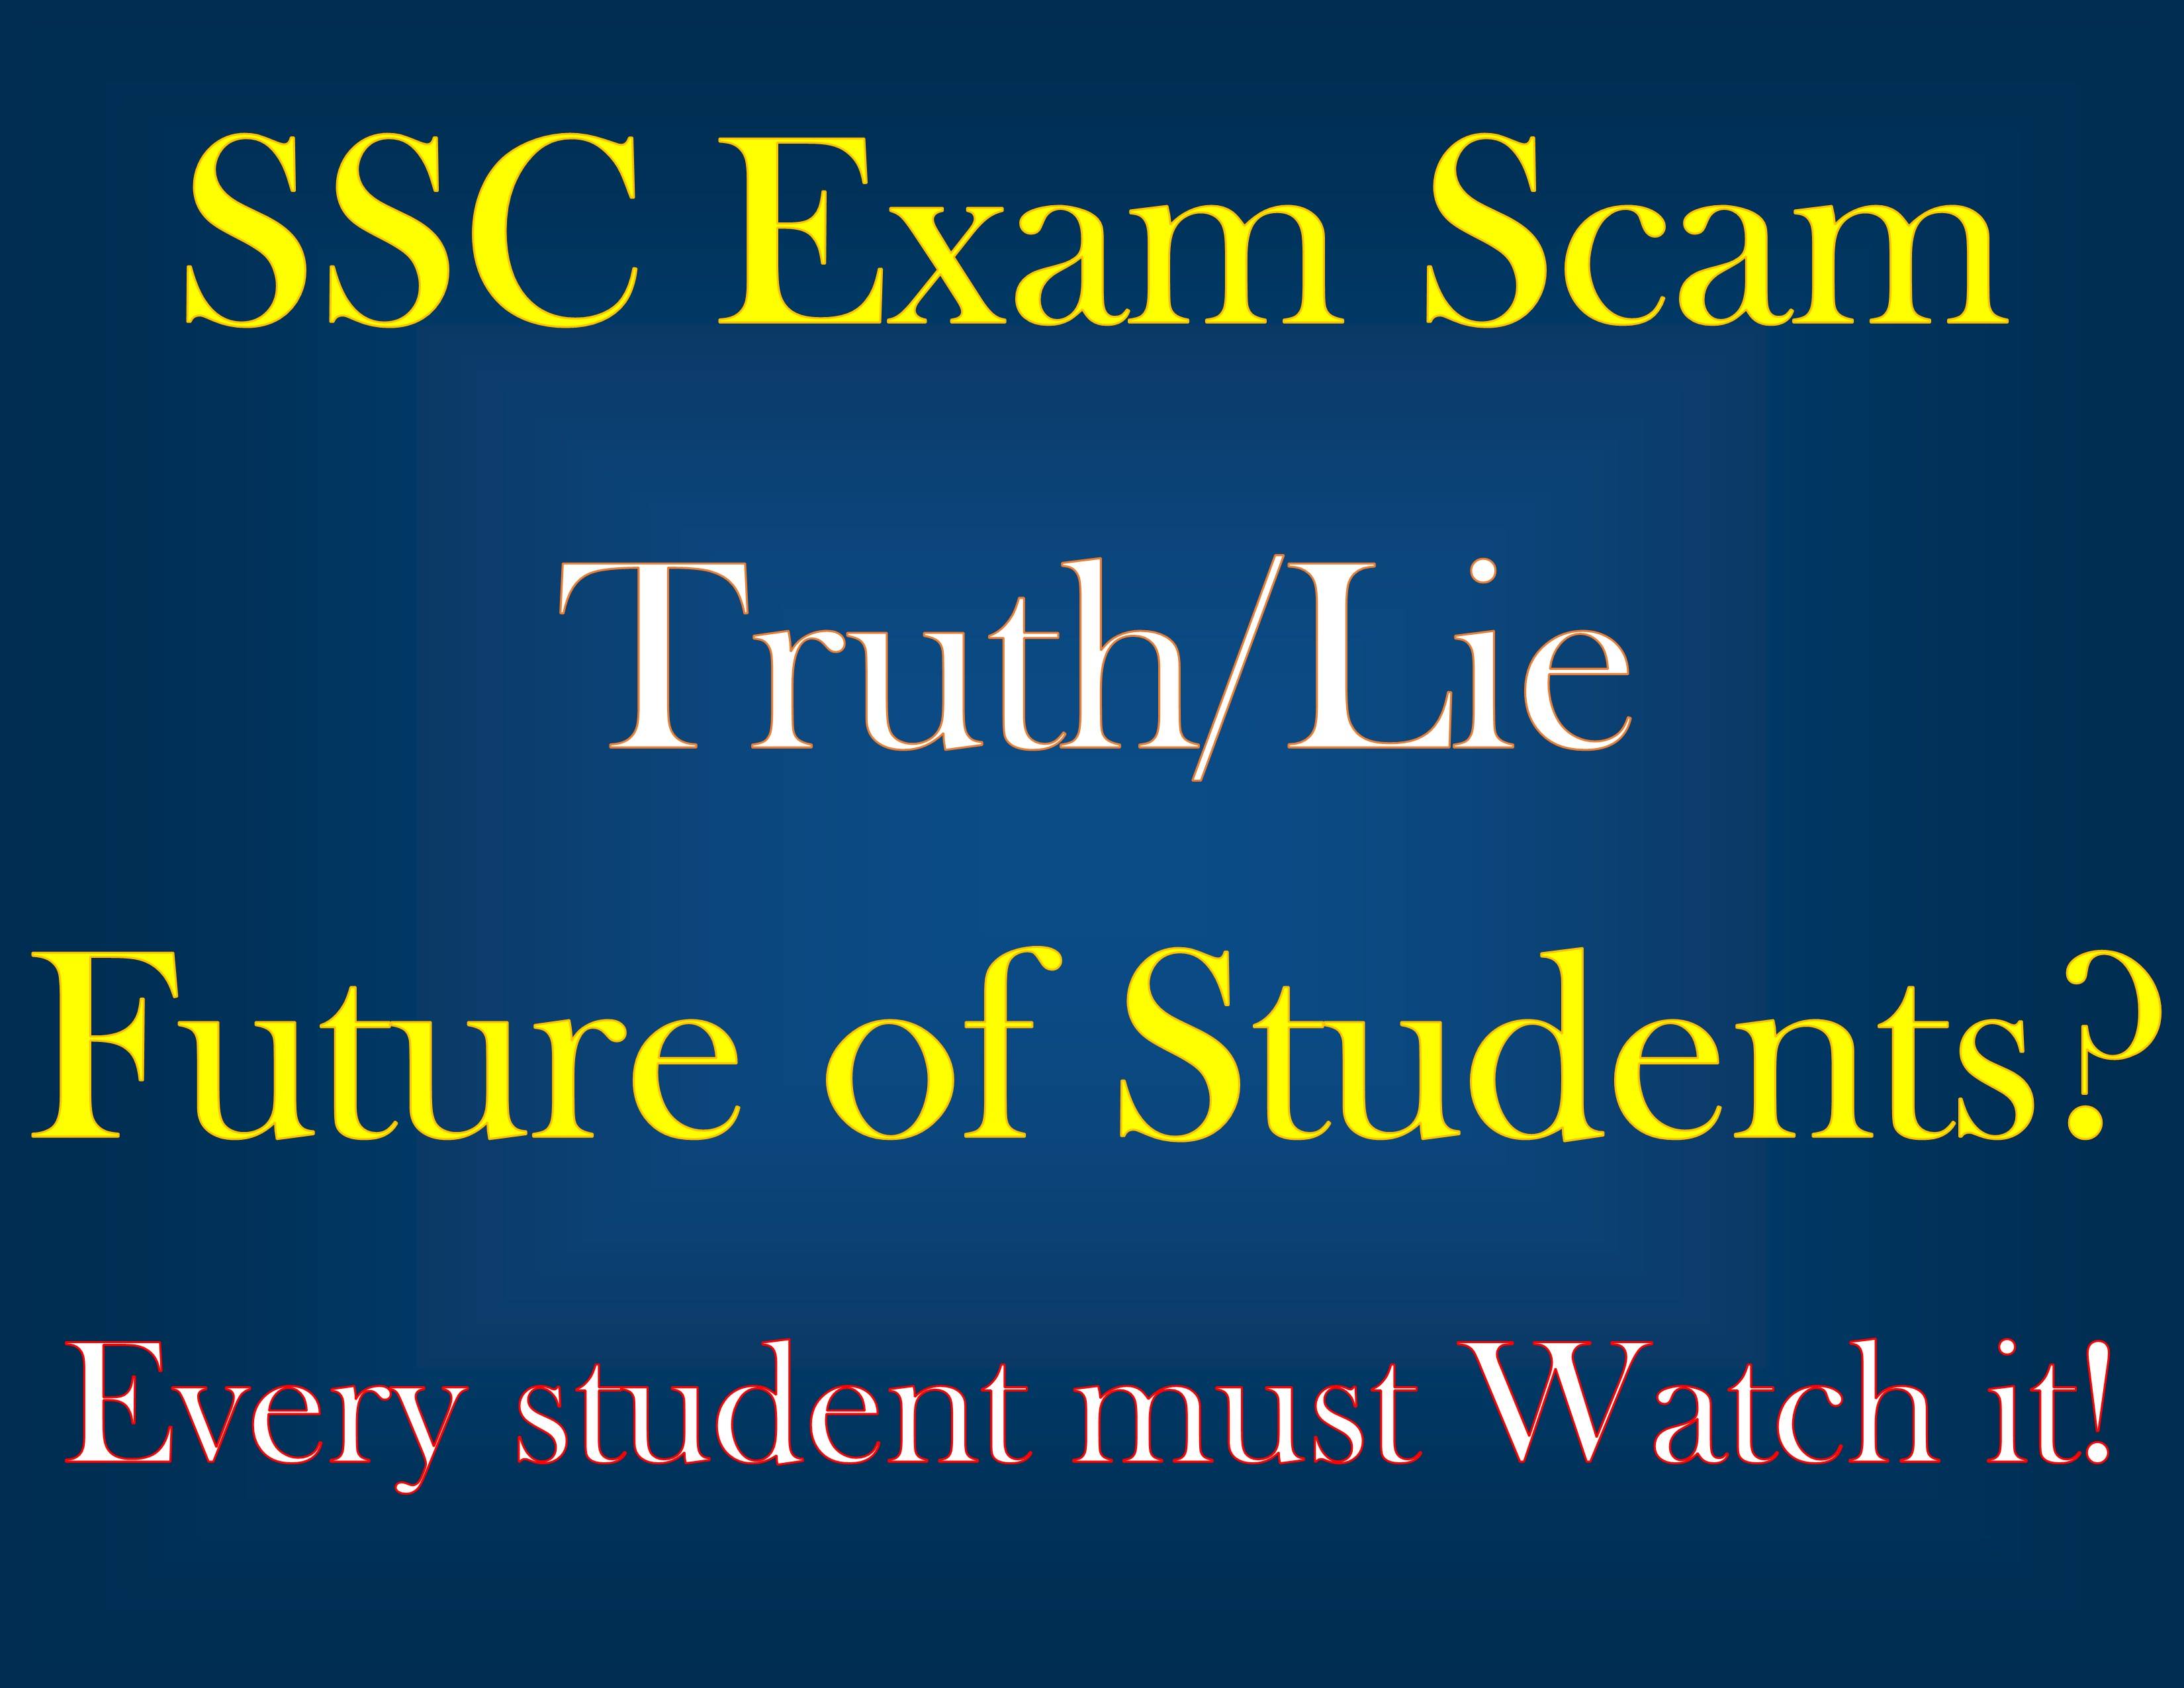 SSC exam scam